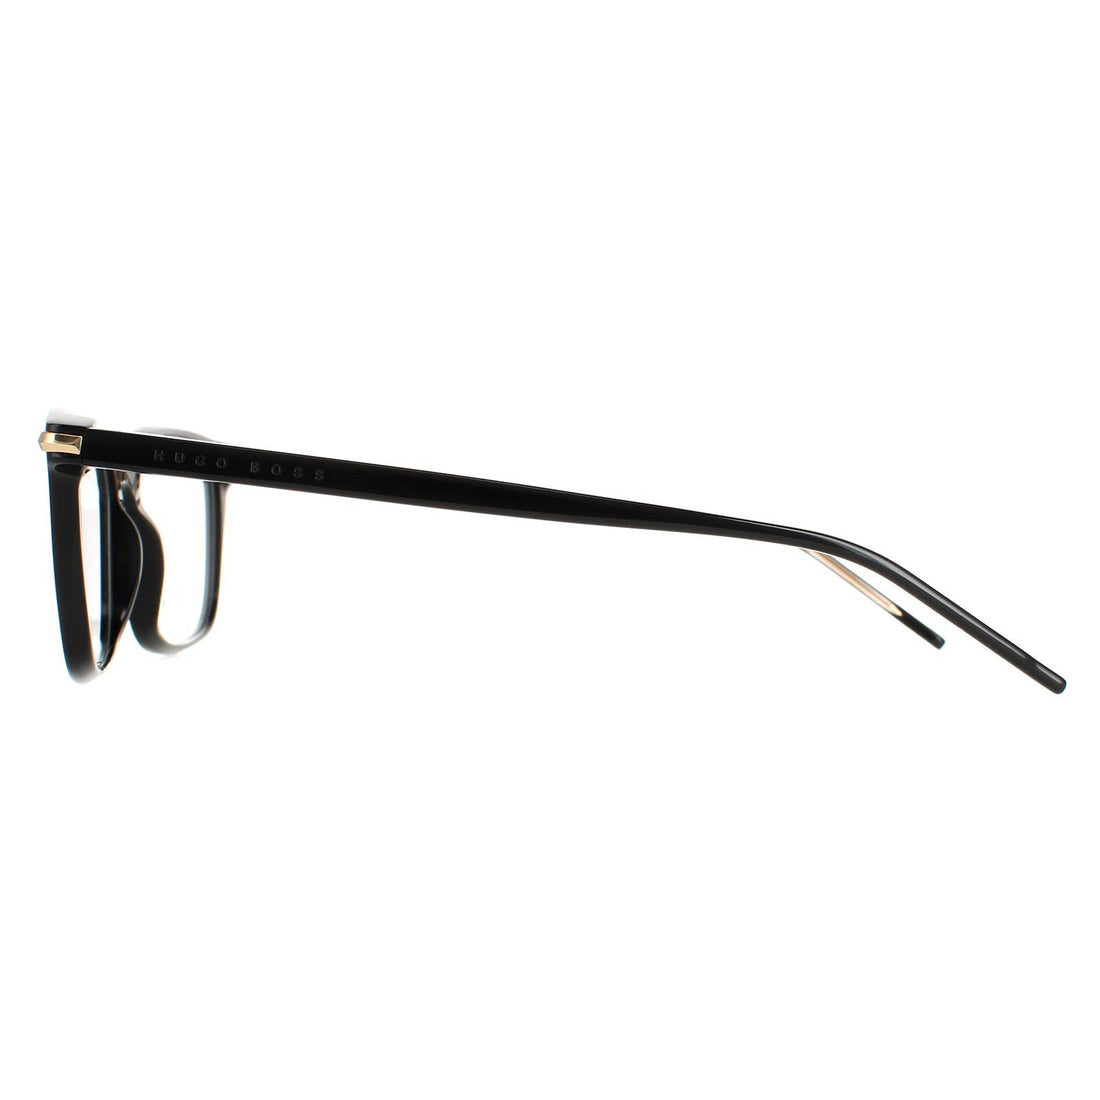 Hugo Boss Glasses Frames BOSS 1269 2M2 Black Gold Men Women